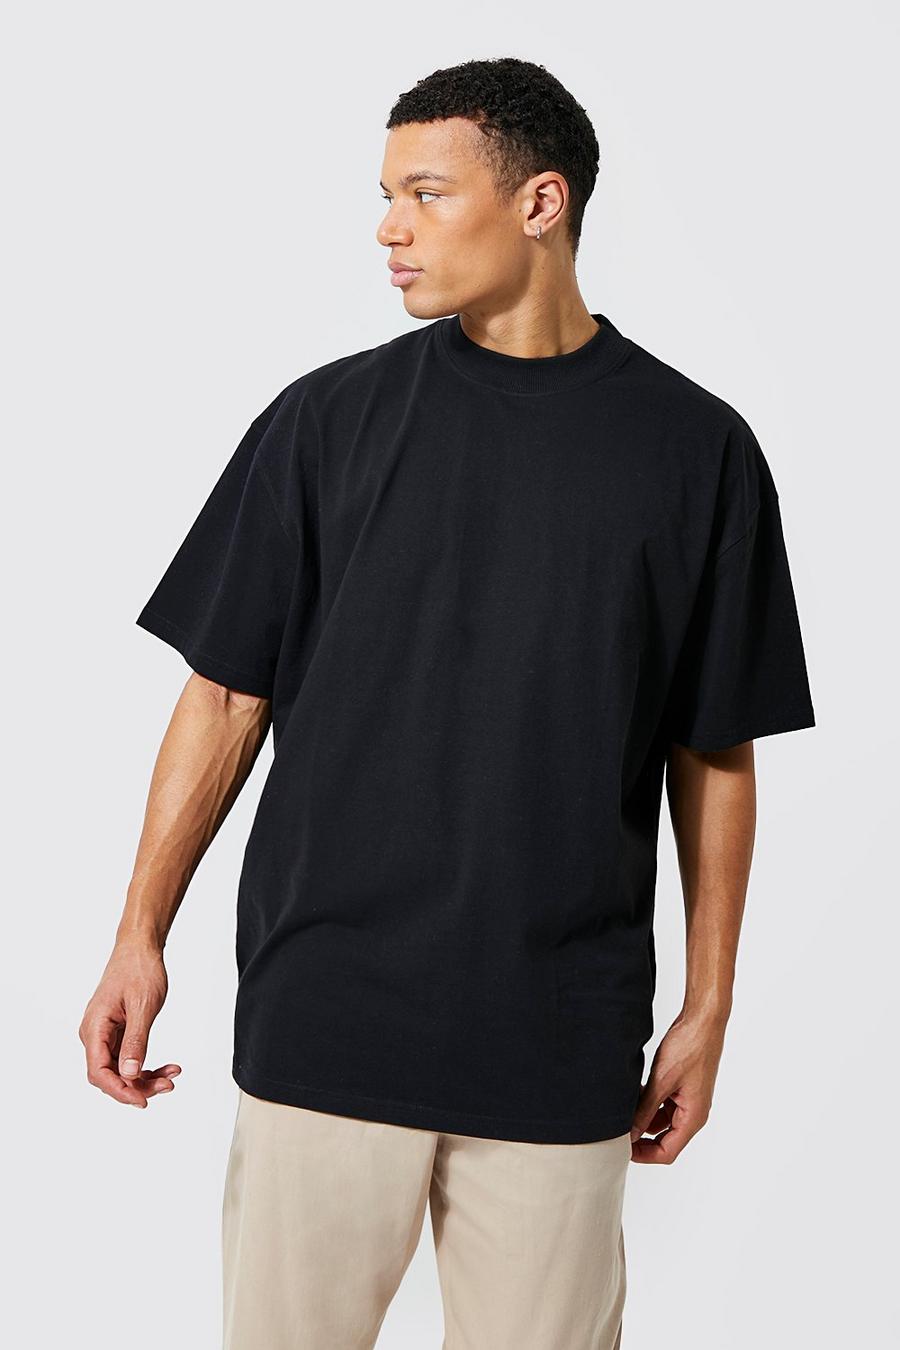 T-shirt Tall comoda in cotone REEL con girocollo esteso, Black negro